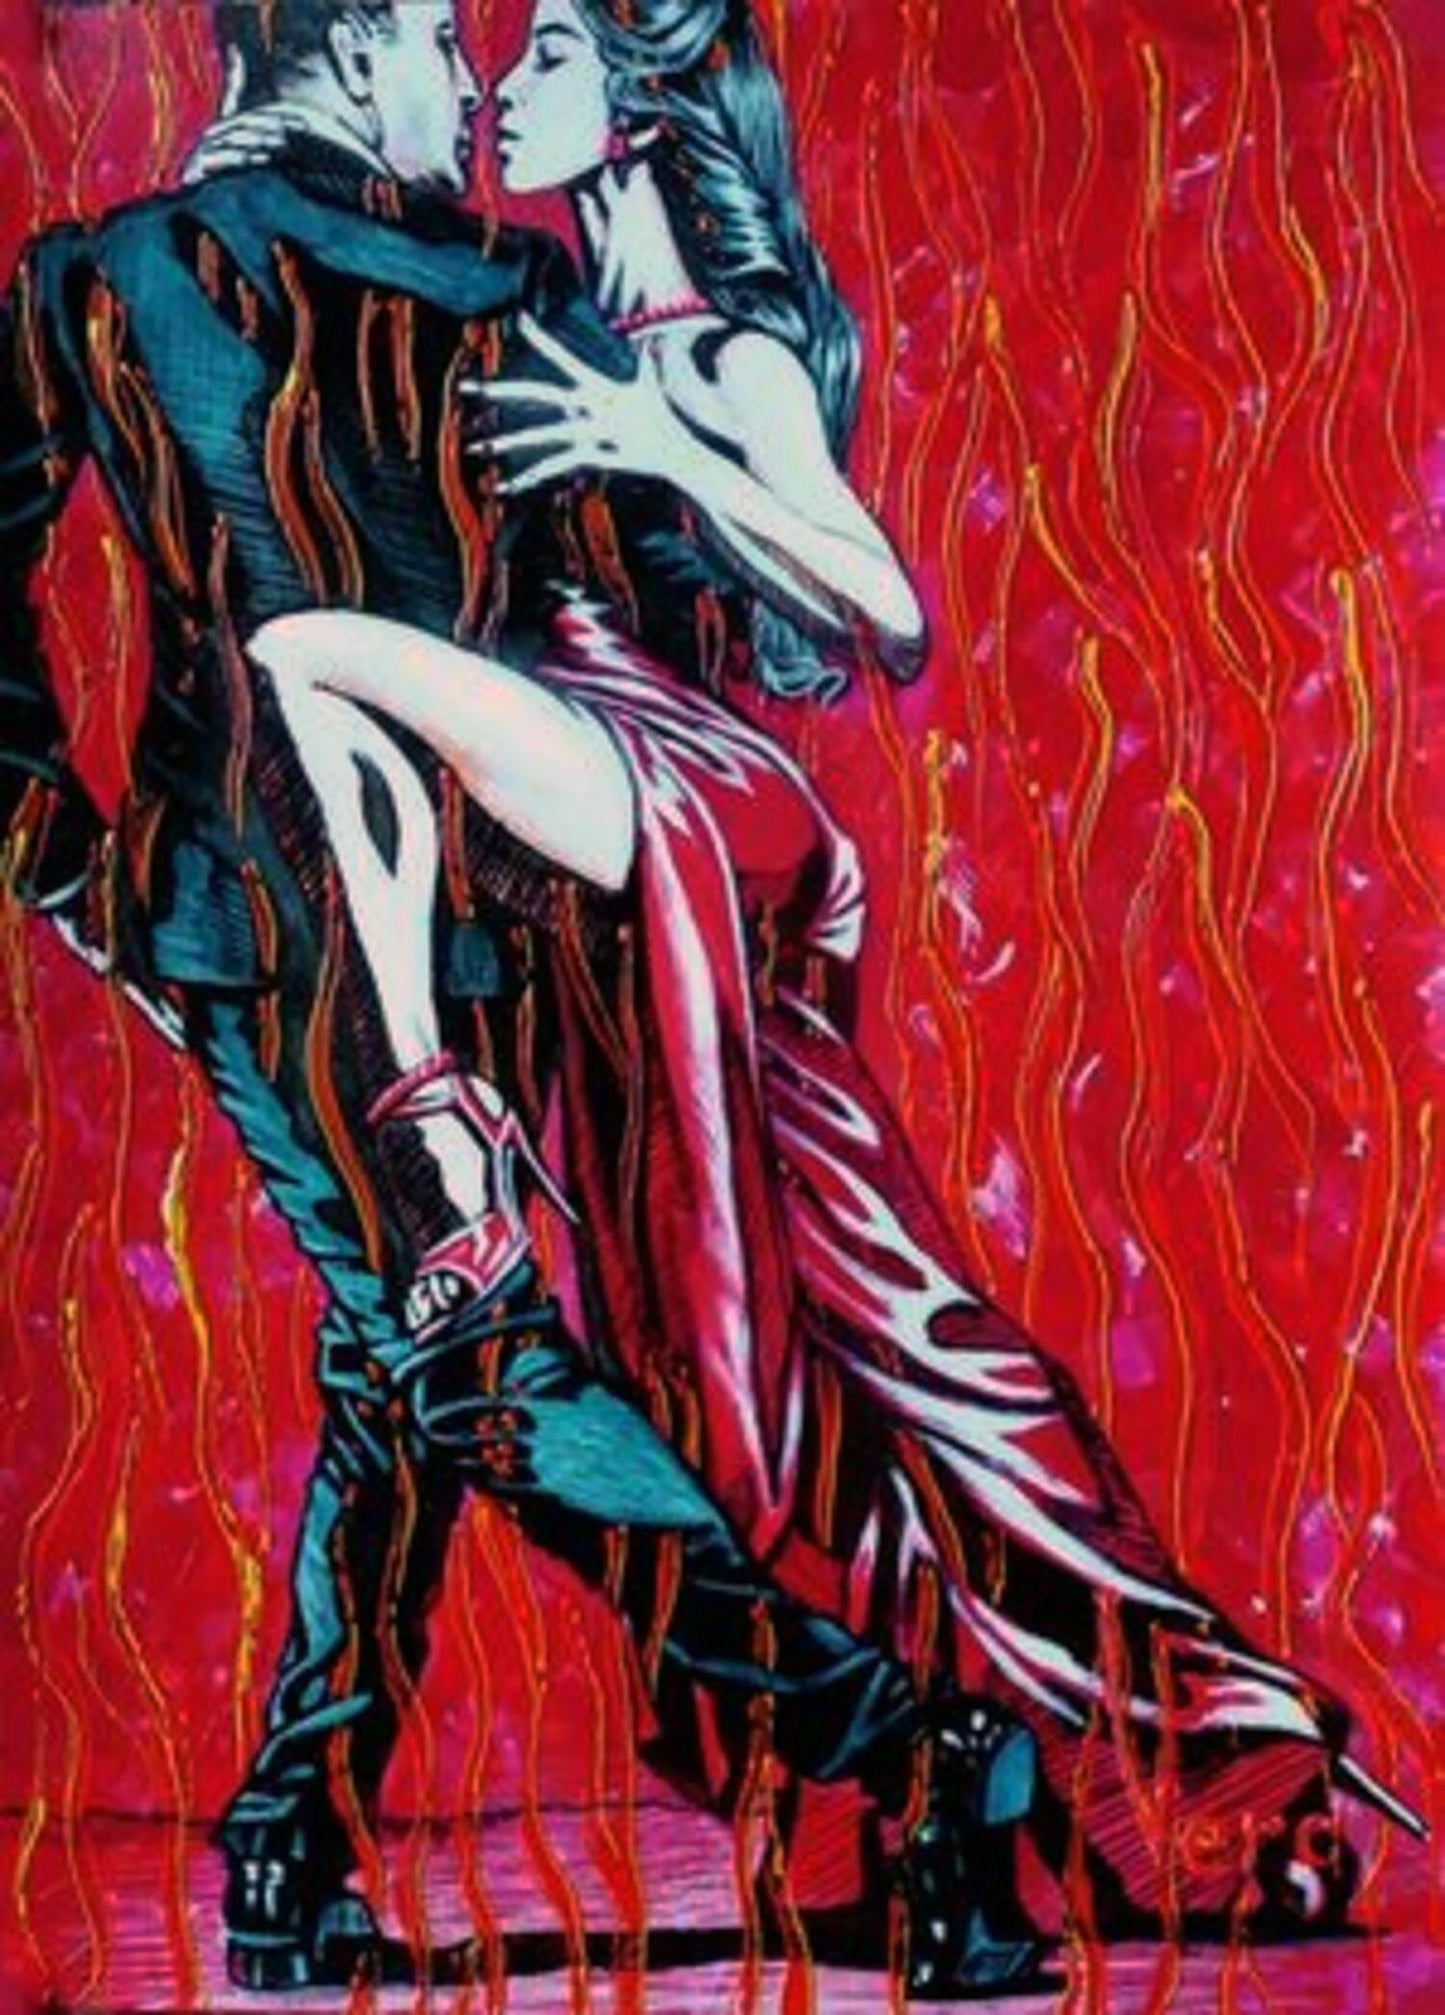 Acrylic painting Fire dance Goncharenko V. V.